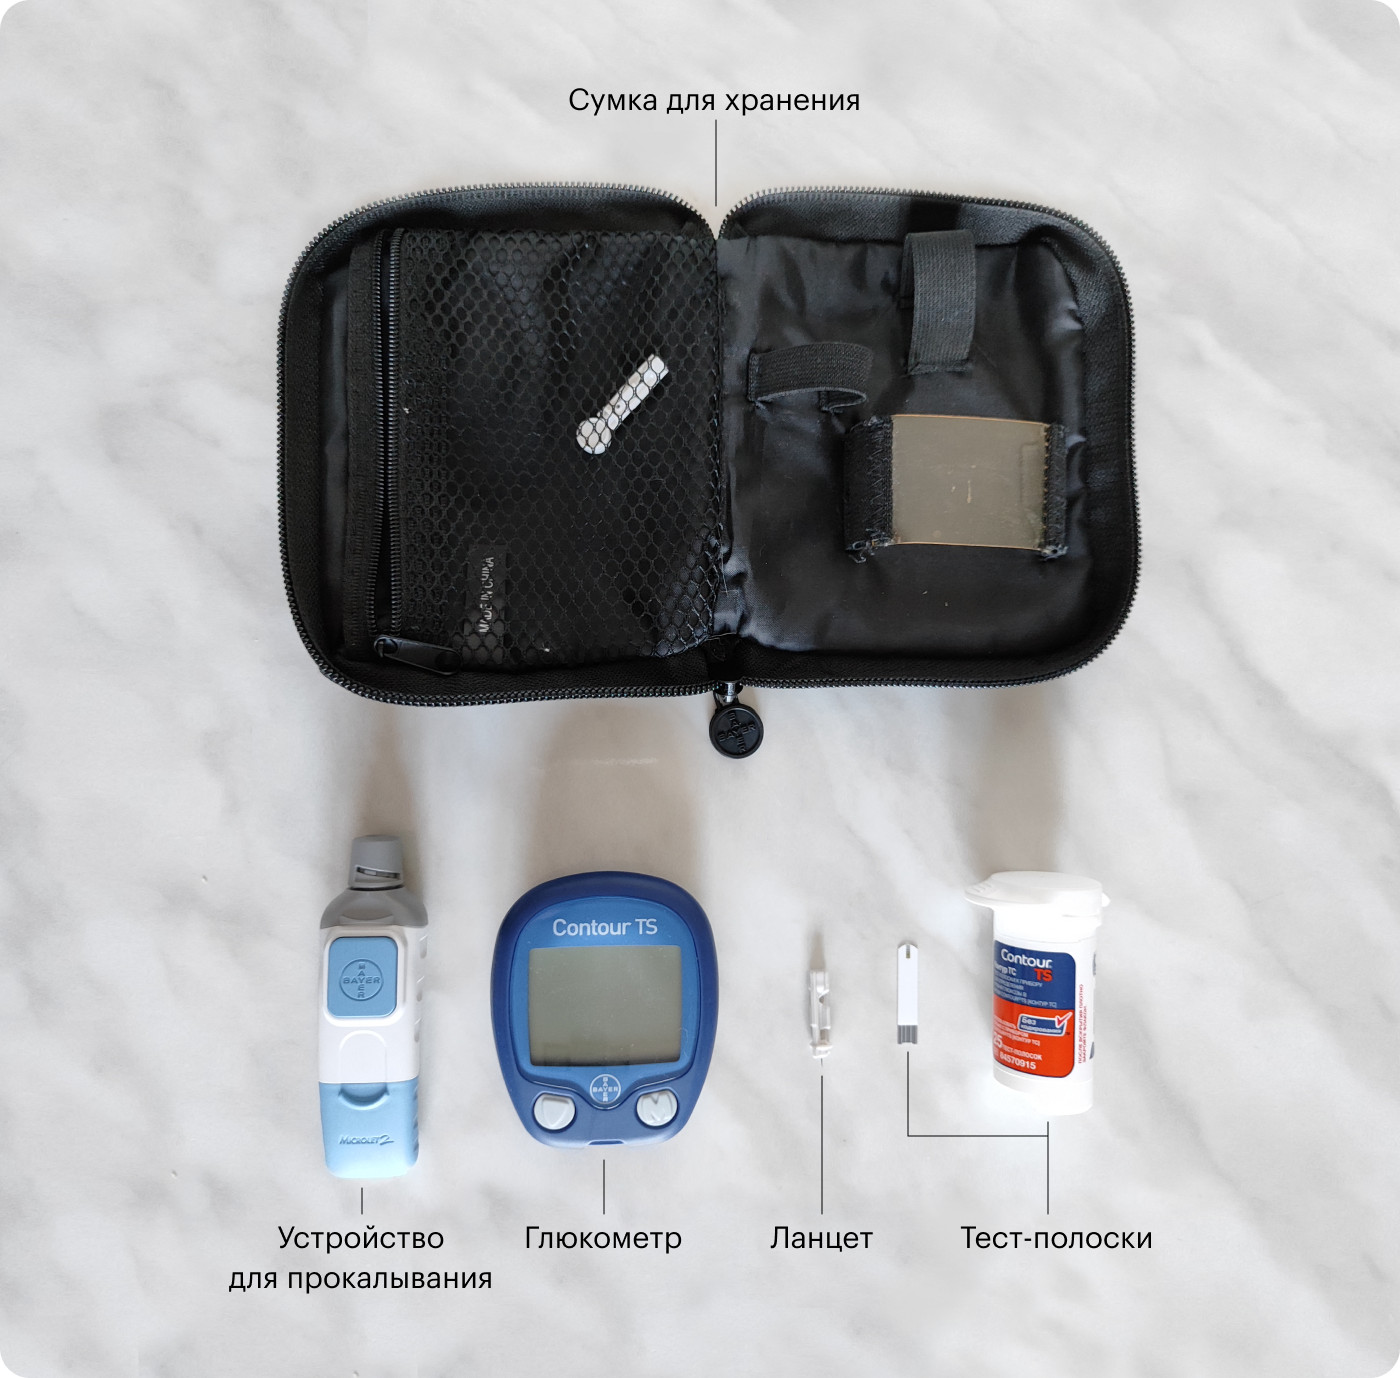 Наш набор для измерения глюкозы: глюкометр, тест⁠-⁠полоски, устройство для прокалывания, ланцет, сумка для хранения